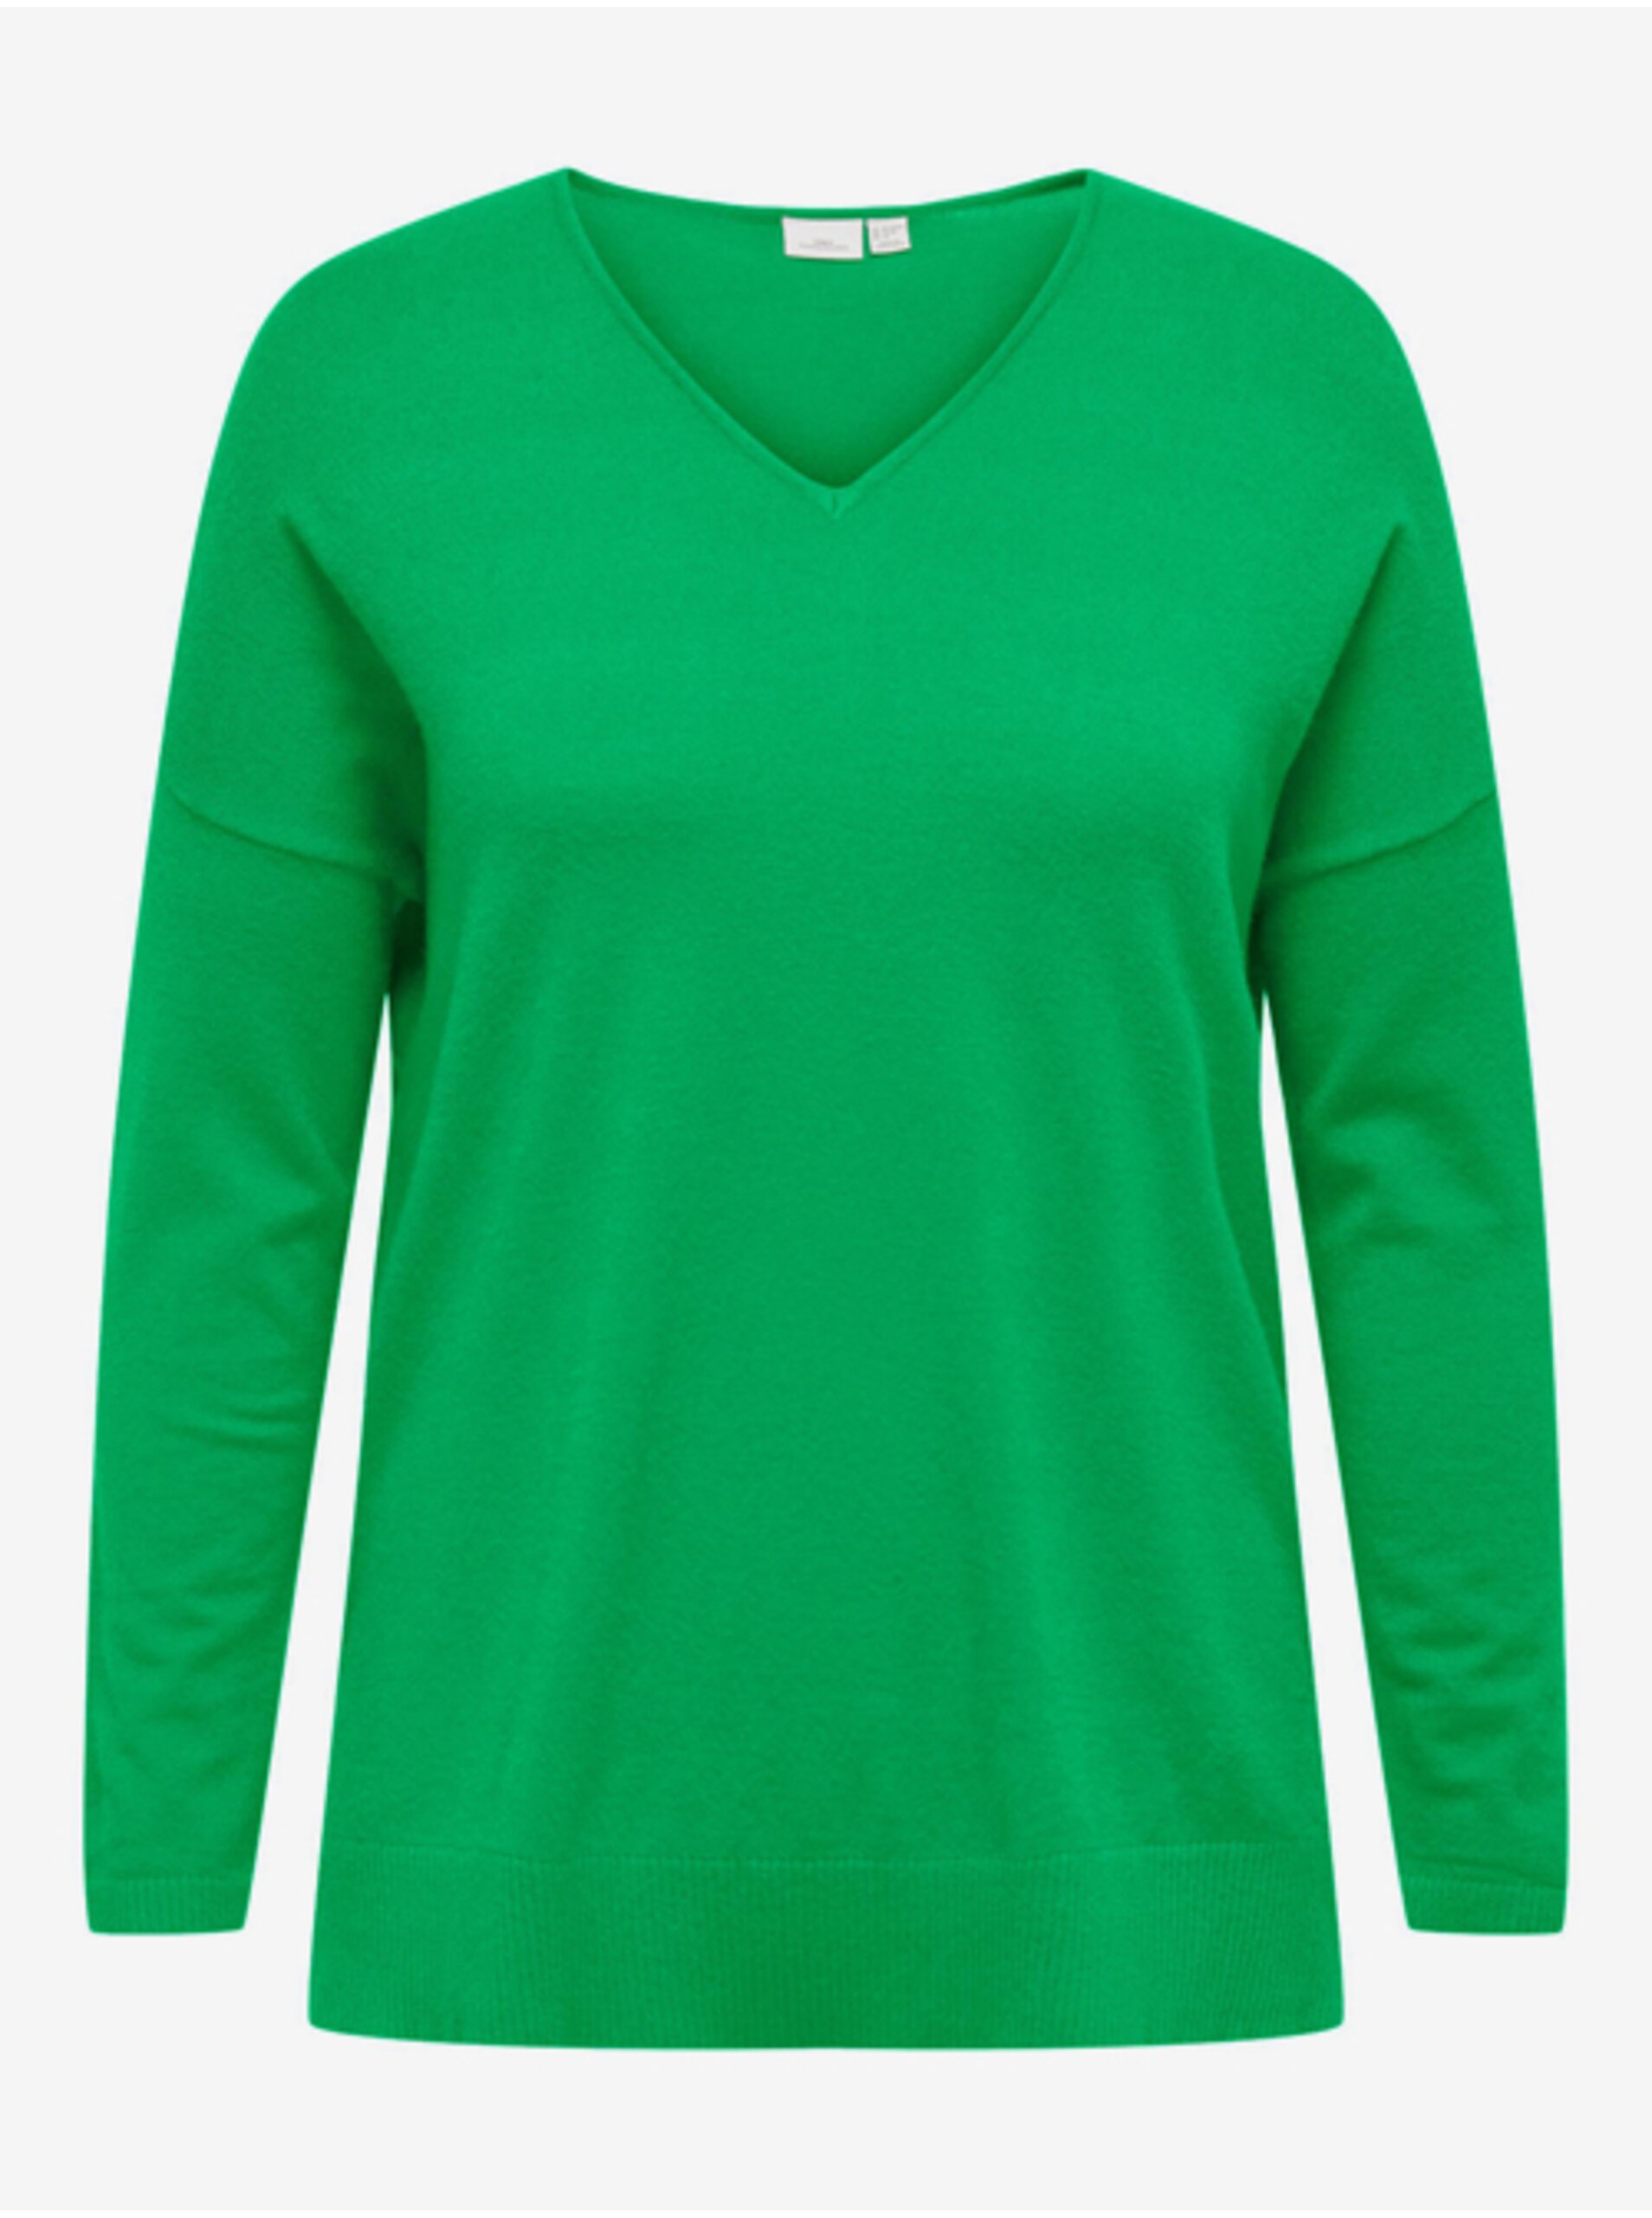 Lacno Zelený dámsky ľahký sveter ONLY CARMAKOMA Ibi